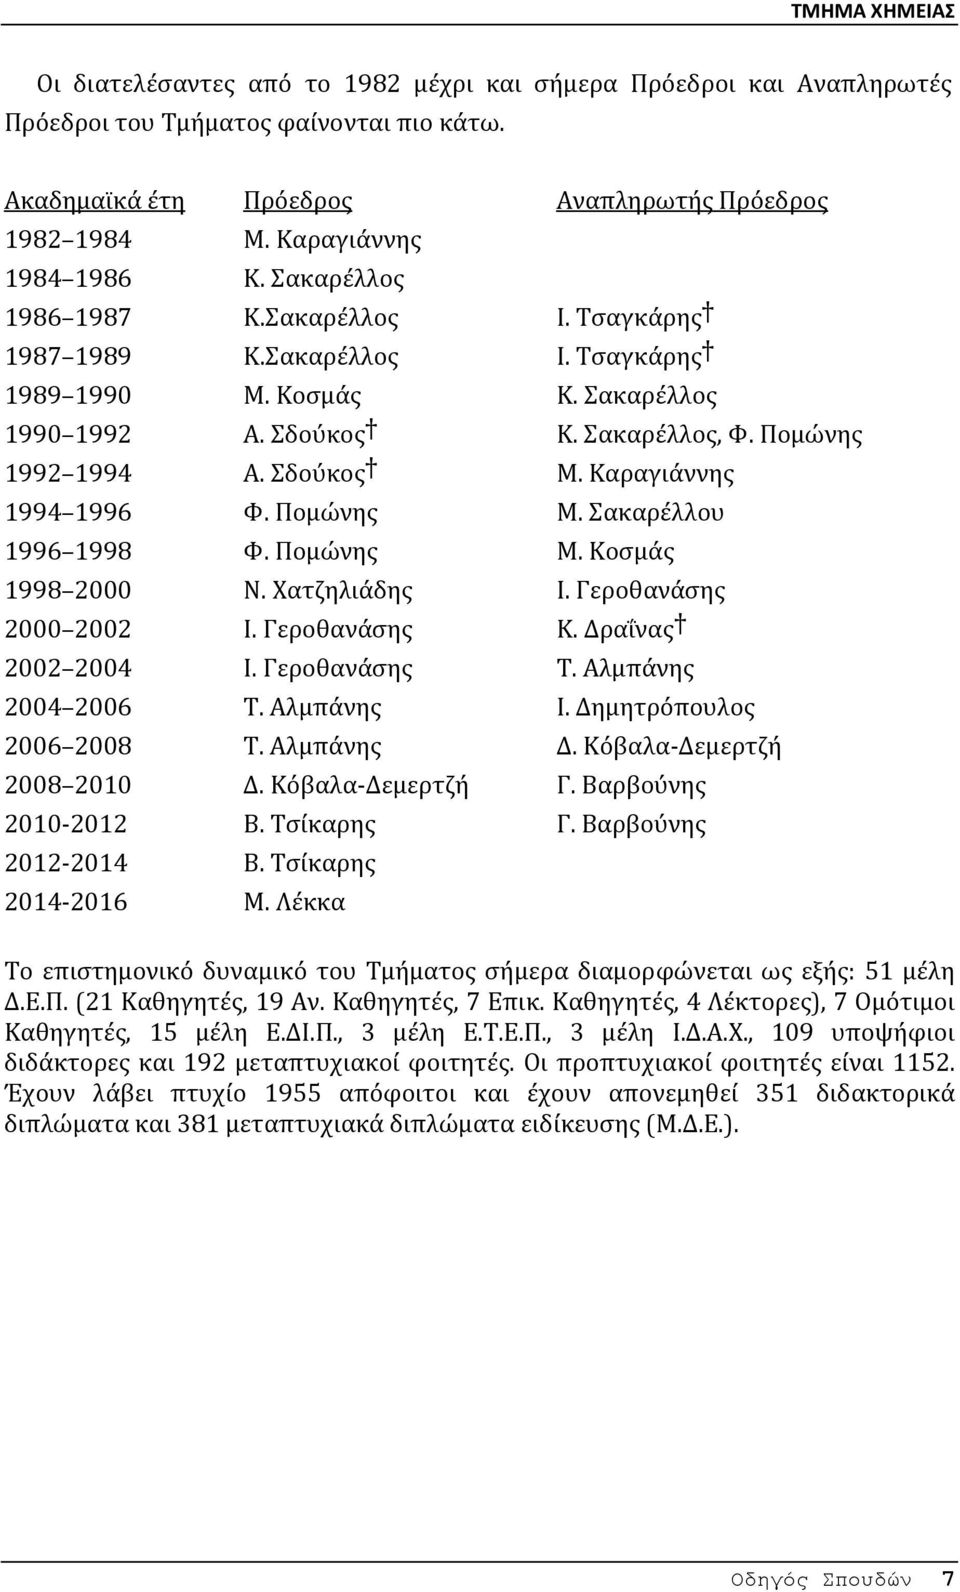 Erforderlich Ekstase Pest 2003 απρίλιος ανακοινώνεται στον τύπο επίσημα η  ολοκλήρωση του hgp Entwurf Beere Rille